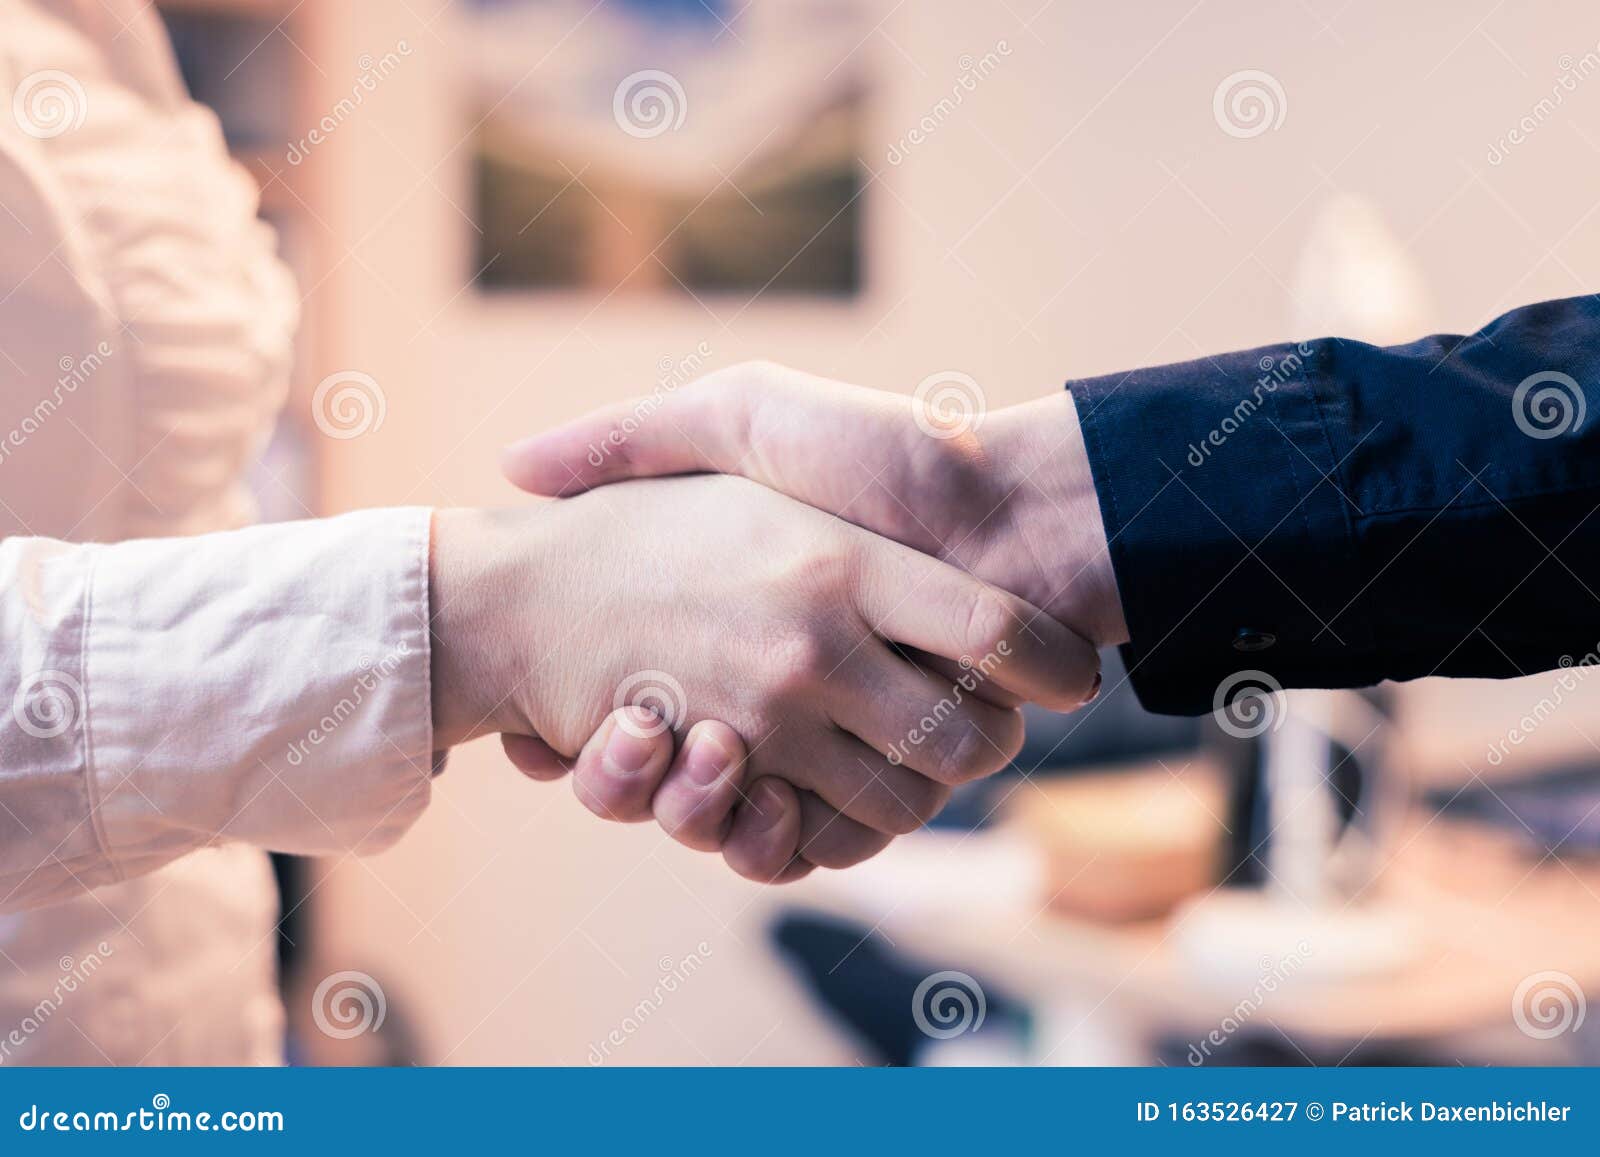 握手 团队合作的理念 办公室里男女握手的特写库存图片 图片包括有正式 问候 营销 协作 概念